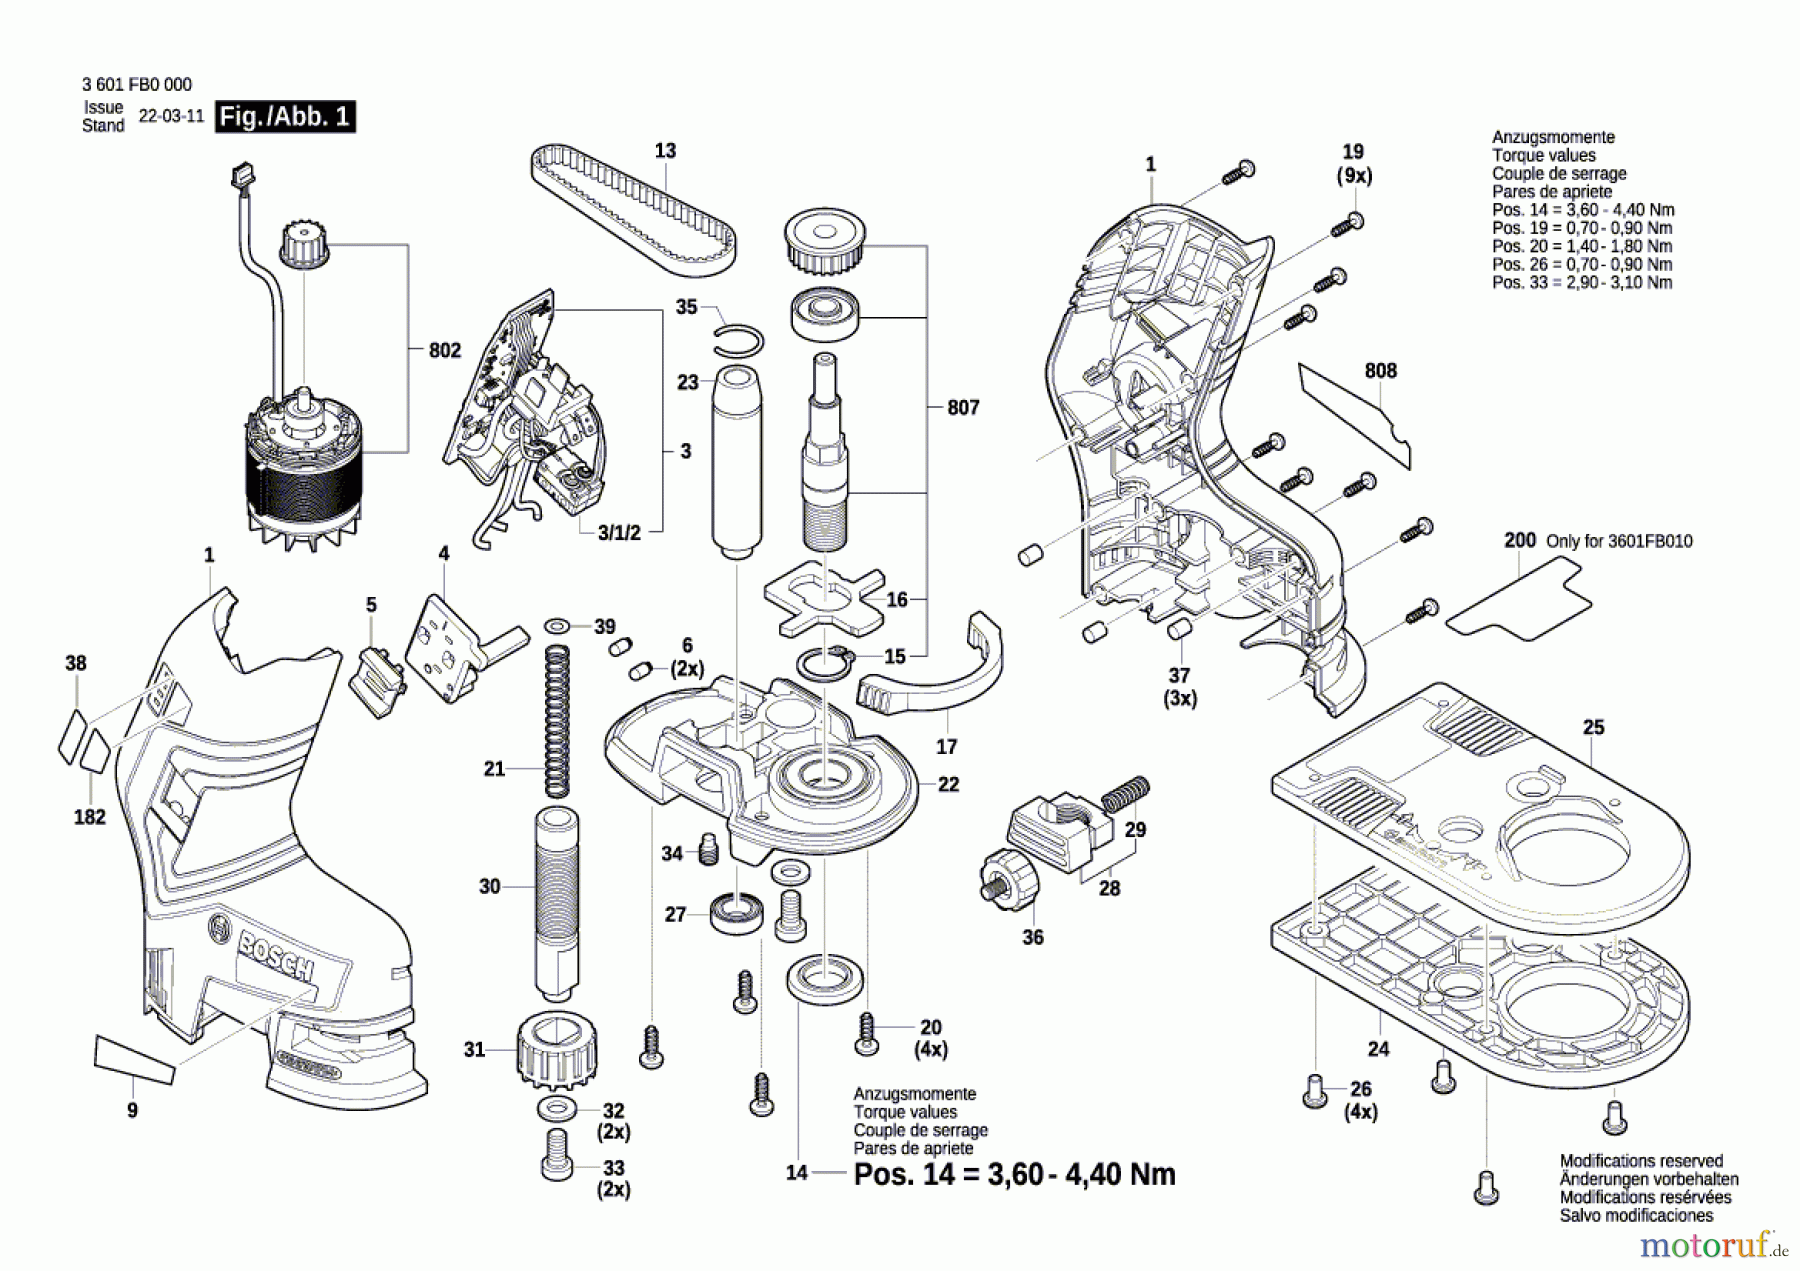  Bosch Werkzeug Oberfräse GKF 12V-8 Seite 1